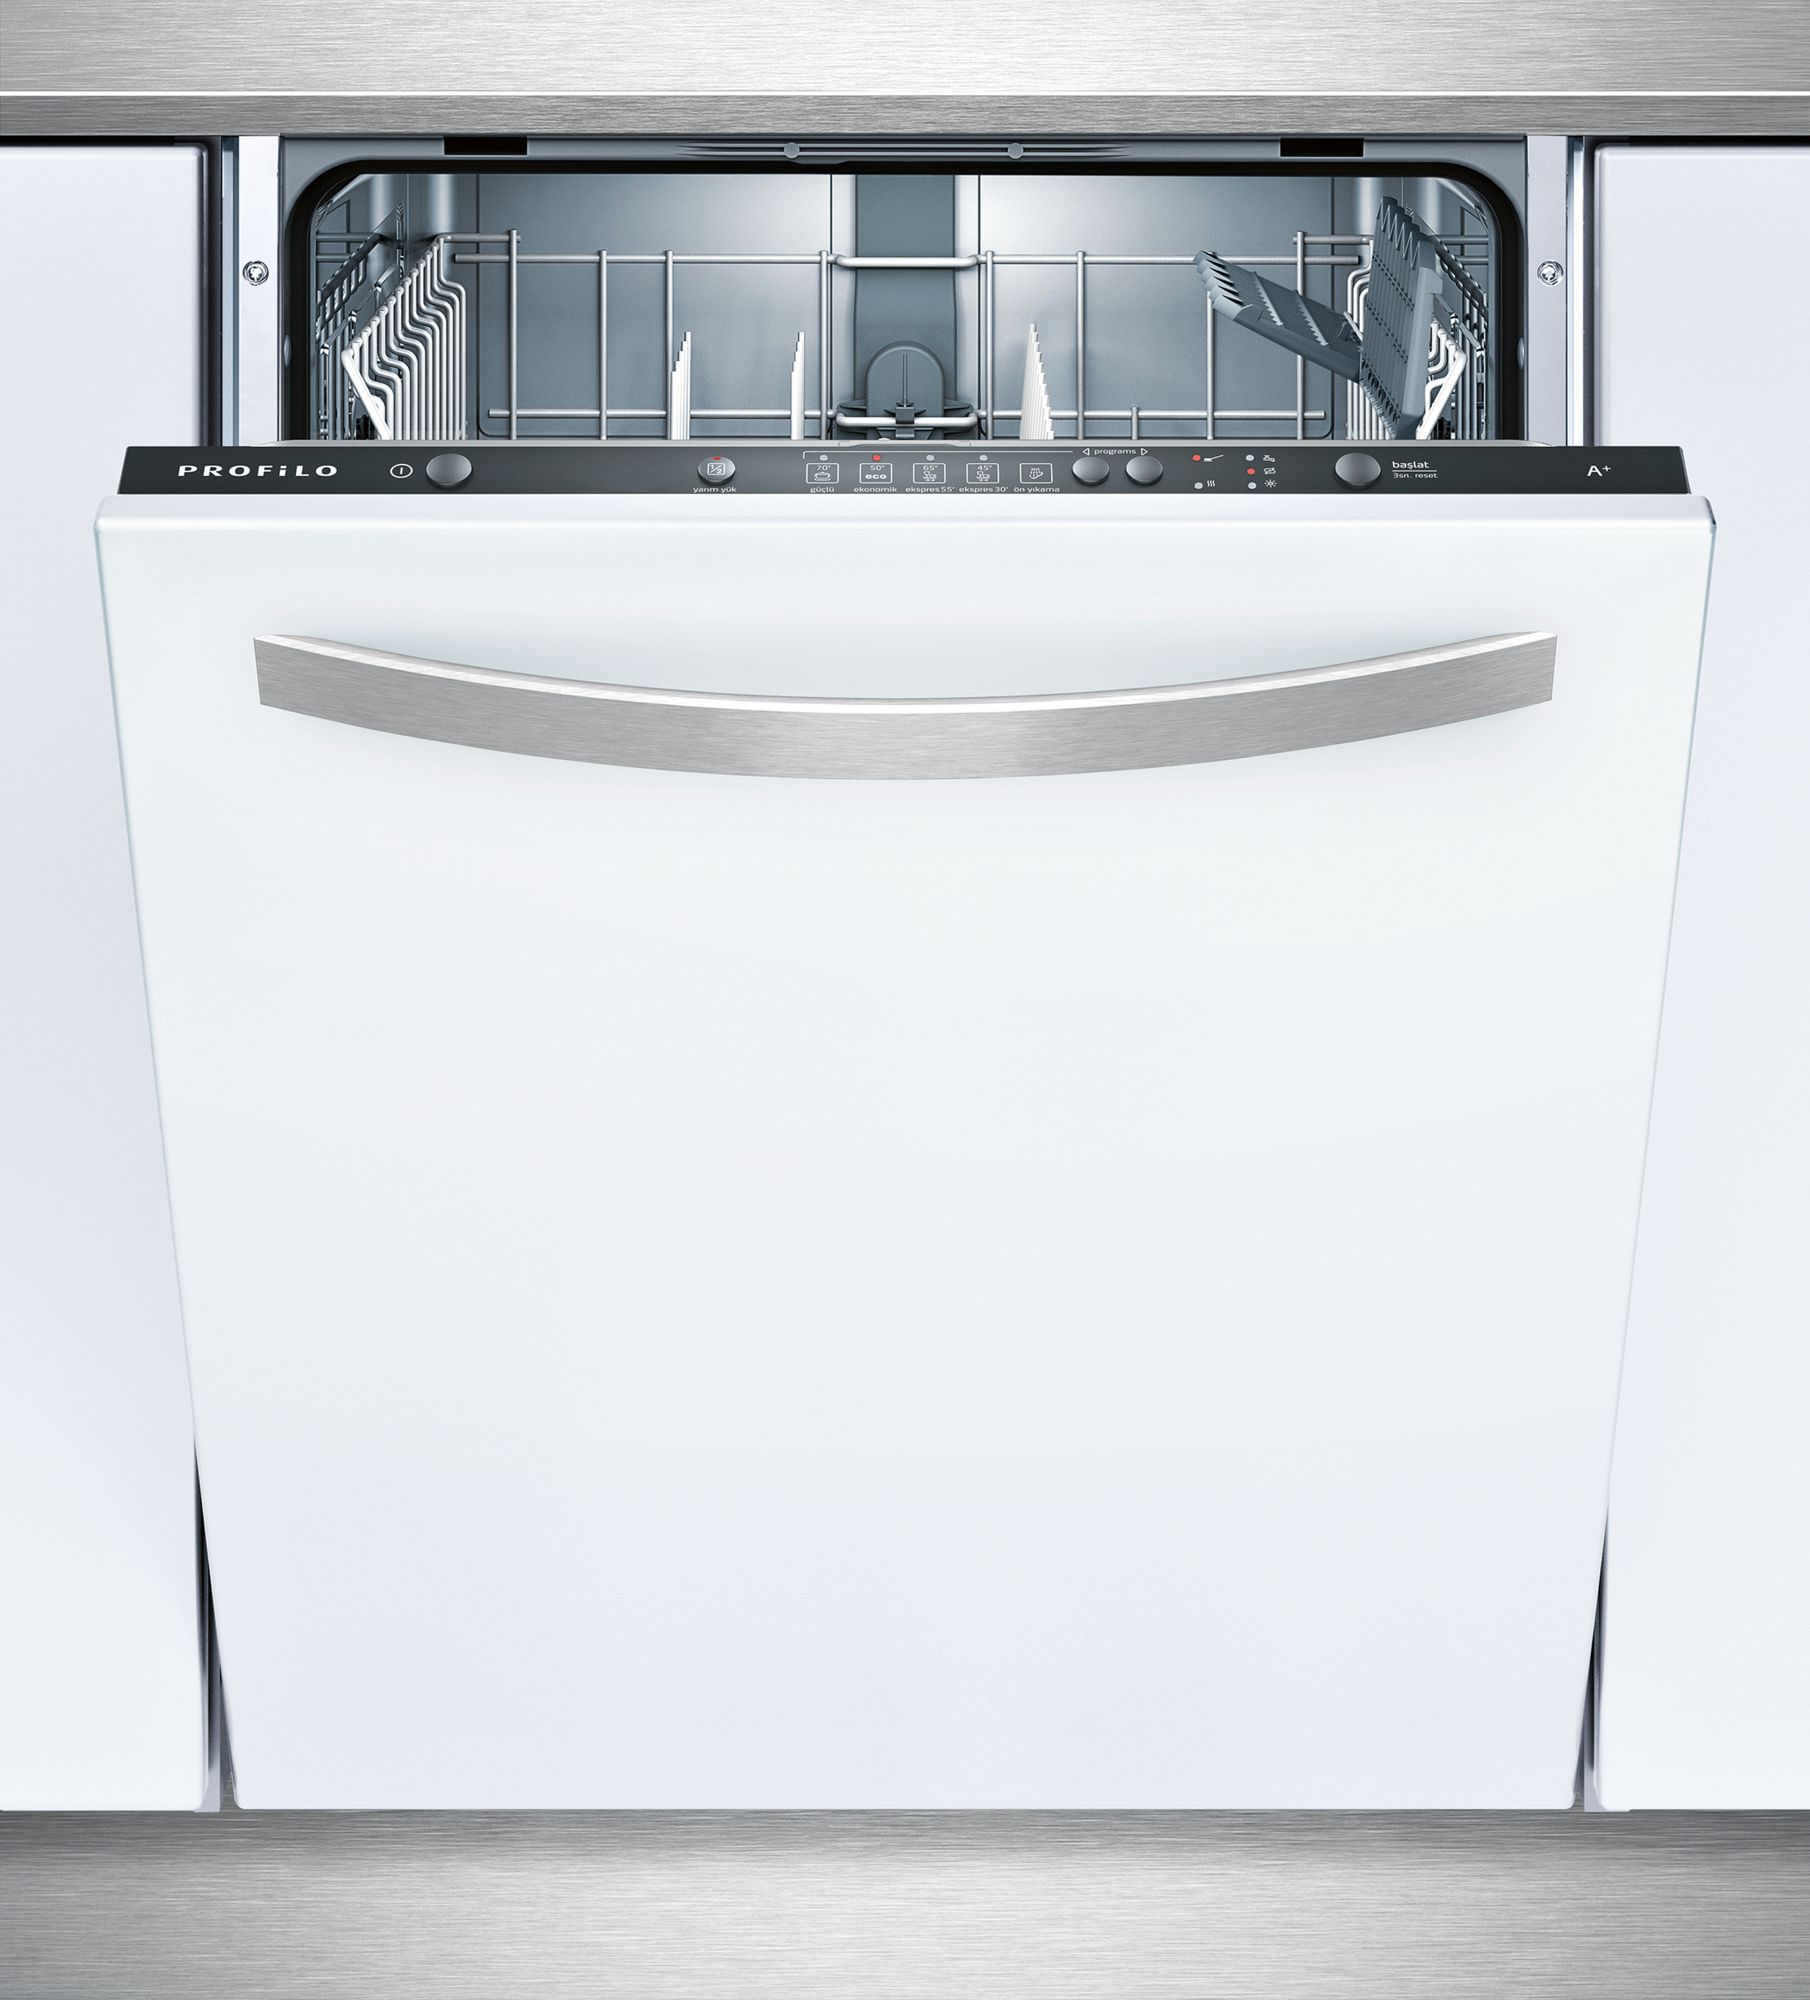 Сравнить посудомоечные машины. Посудомоечная машина Balay 3vt531xa. Посудомоечная машина Balay 3vf785xa. Посудомоечная машина Balay 3vf703xa. Посудомоечная машина Balay 3vf304na.